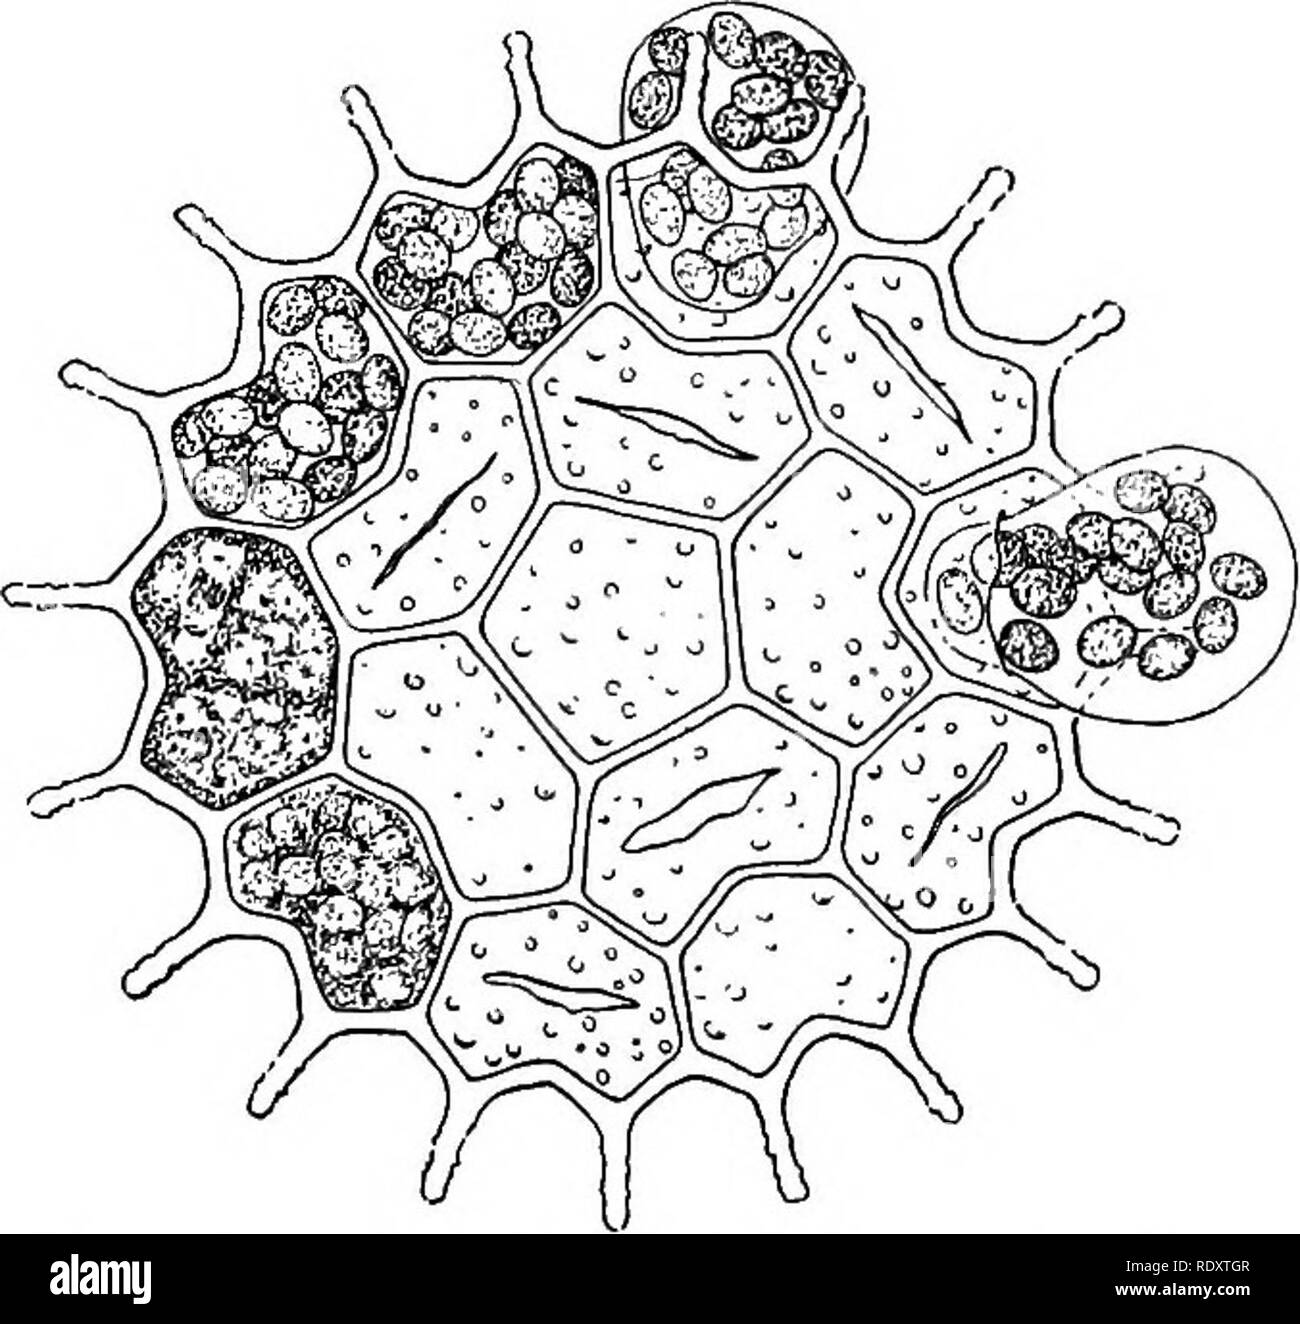 Ein Lehrbuch der Botanik für Hochschulen und Universitäten ... Botanik.  Abb. 34 - - Pleurococ-cus: die einzelne Zelle mit Zellkern und große  Chloroplasten, und Cell-Gruppen in verschiedenen Größen. Zellen; 36, Zelle